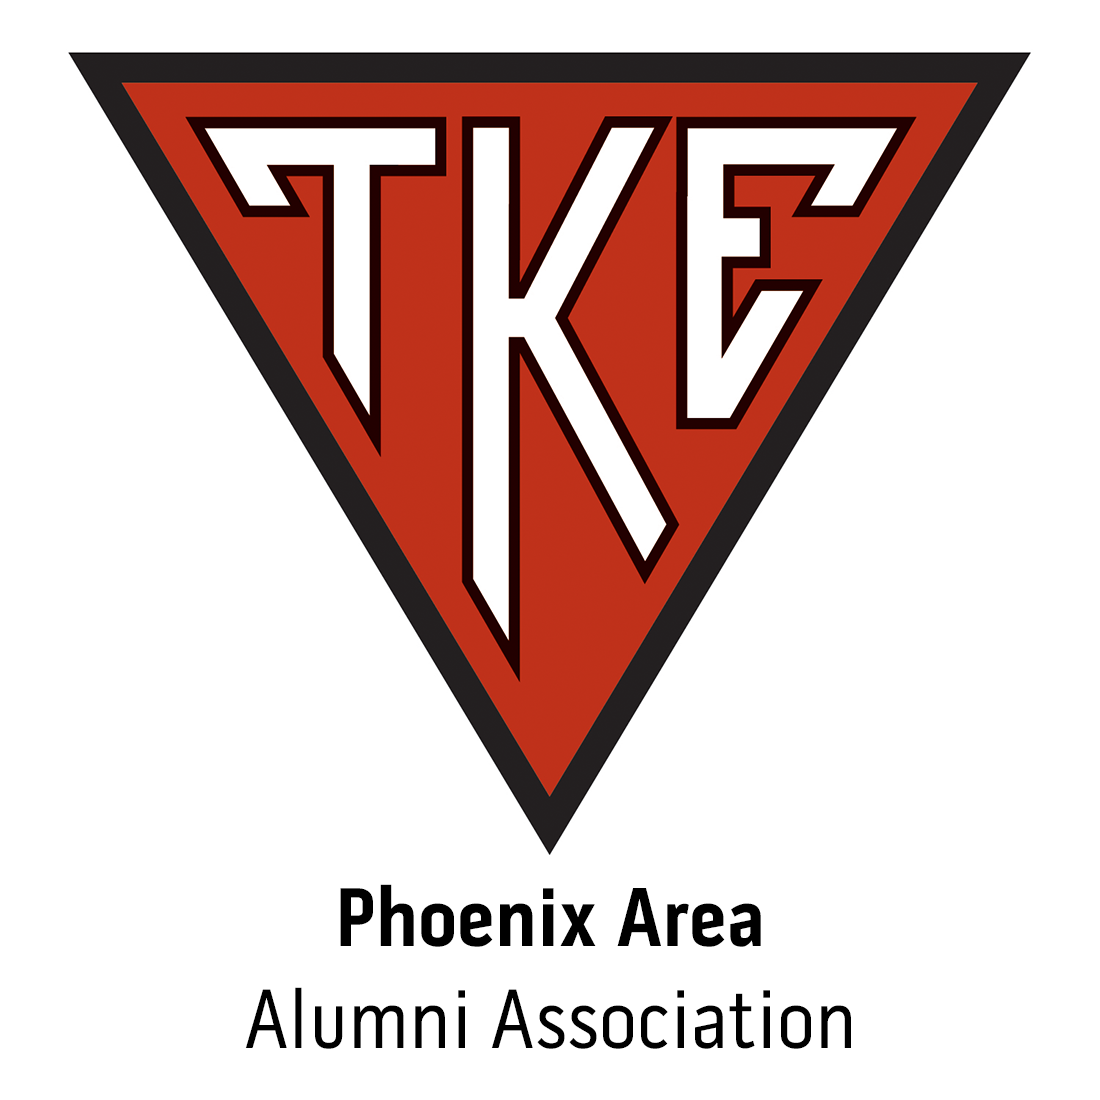 Phoenix Alumni Association at Phoenix, AZ